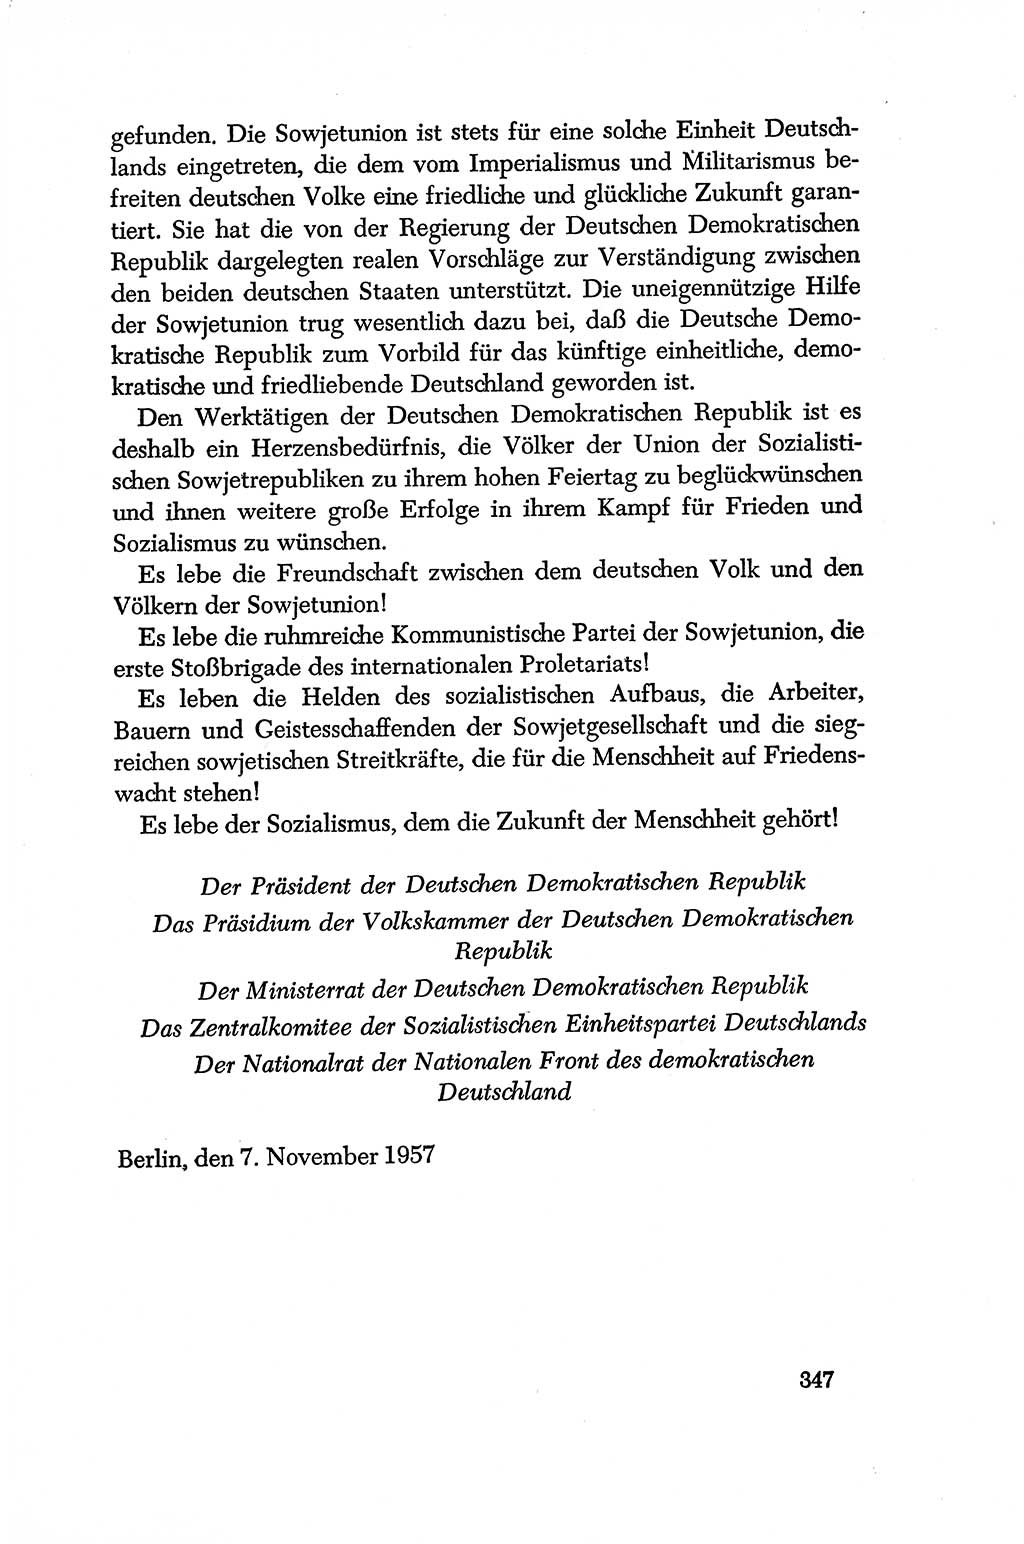 Dokumente der Sozialistischen Einheitspartei Deutschlands (SED) [Deutsche Demokratische Republik (DDR)] 1956-1957, Seite 347 (Dok. SED DDR 1956-1957, S. 347)